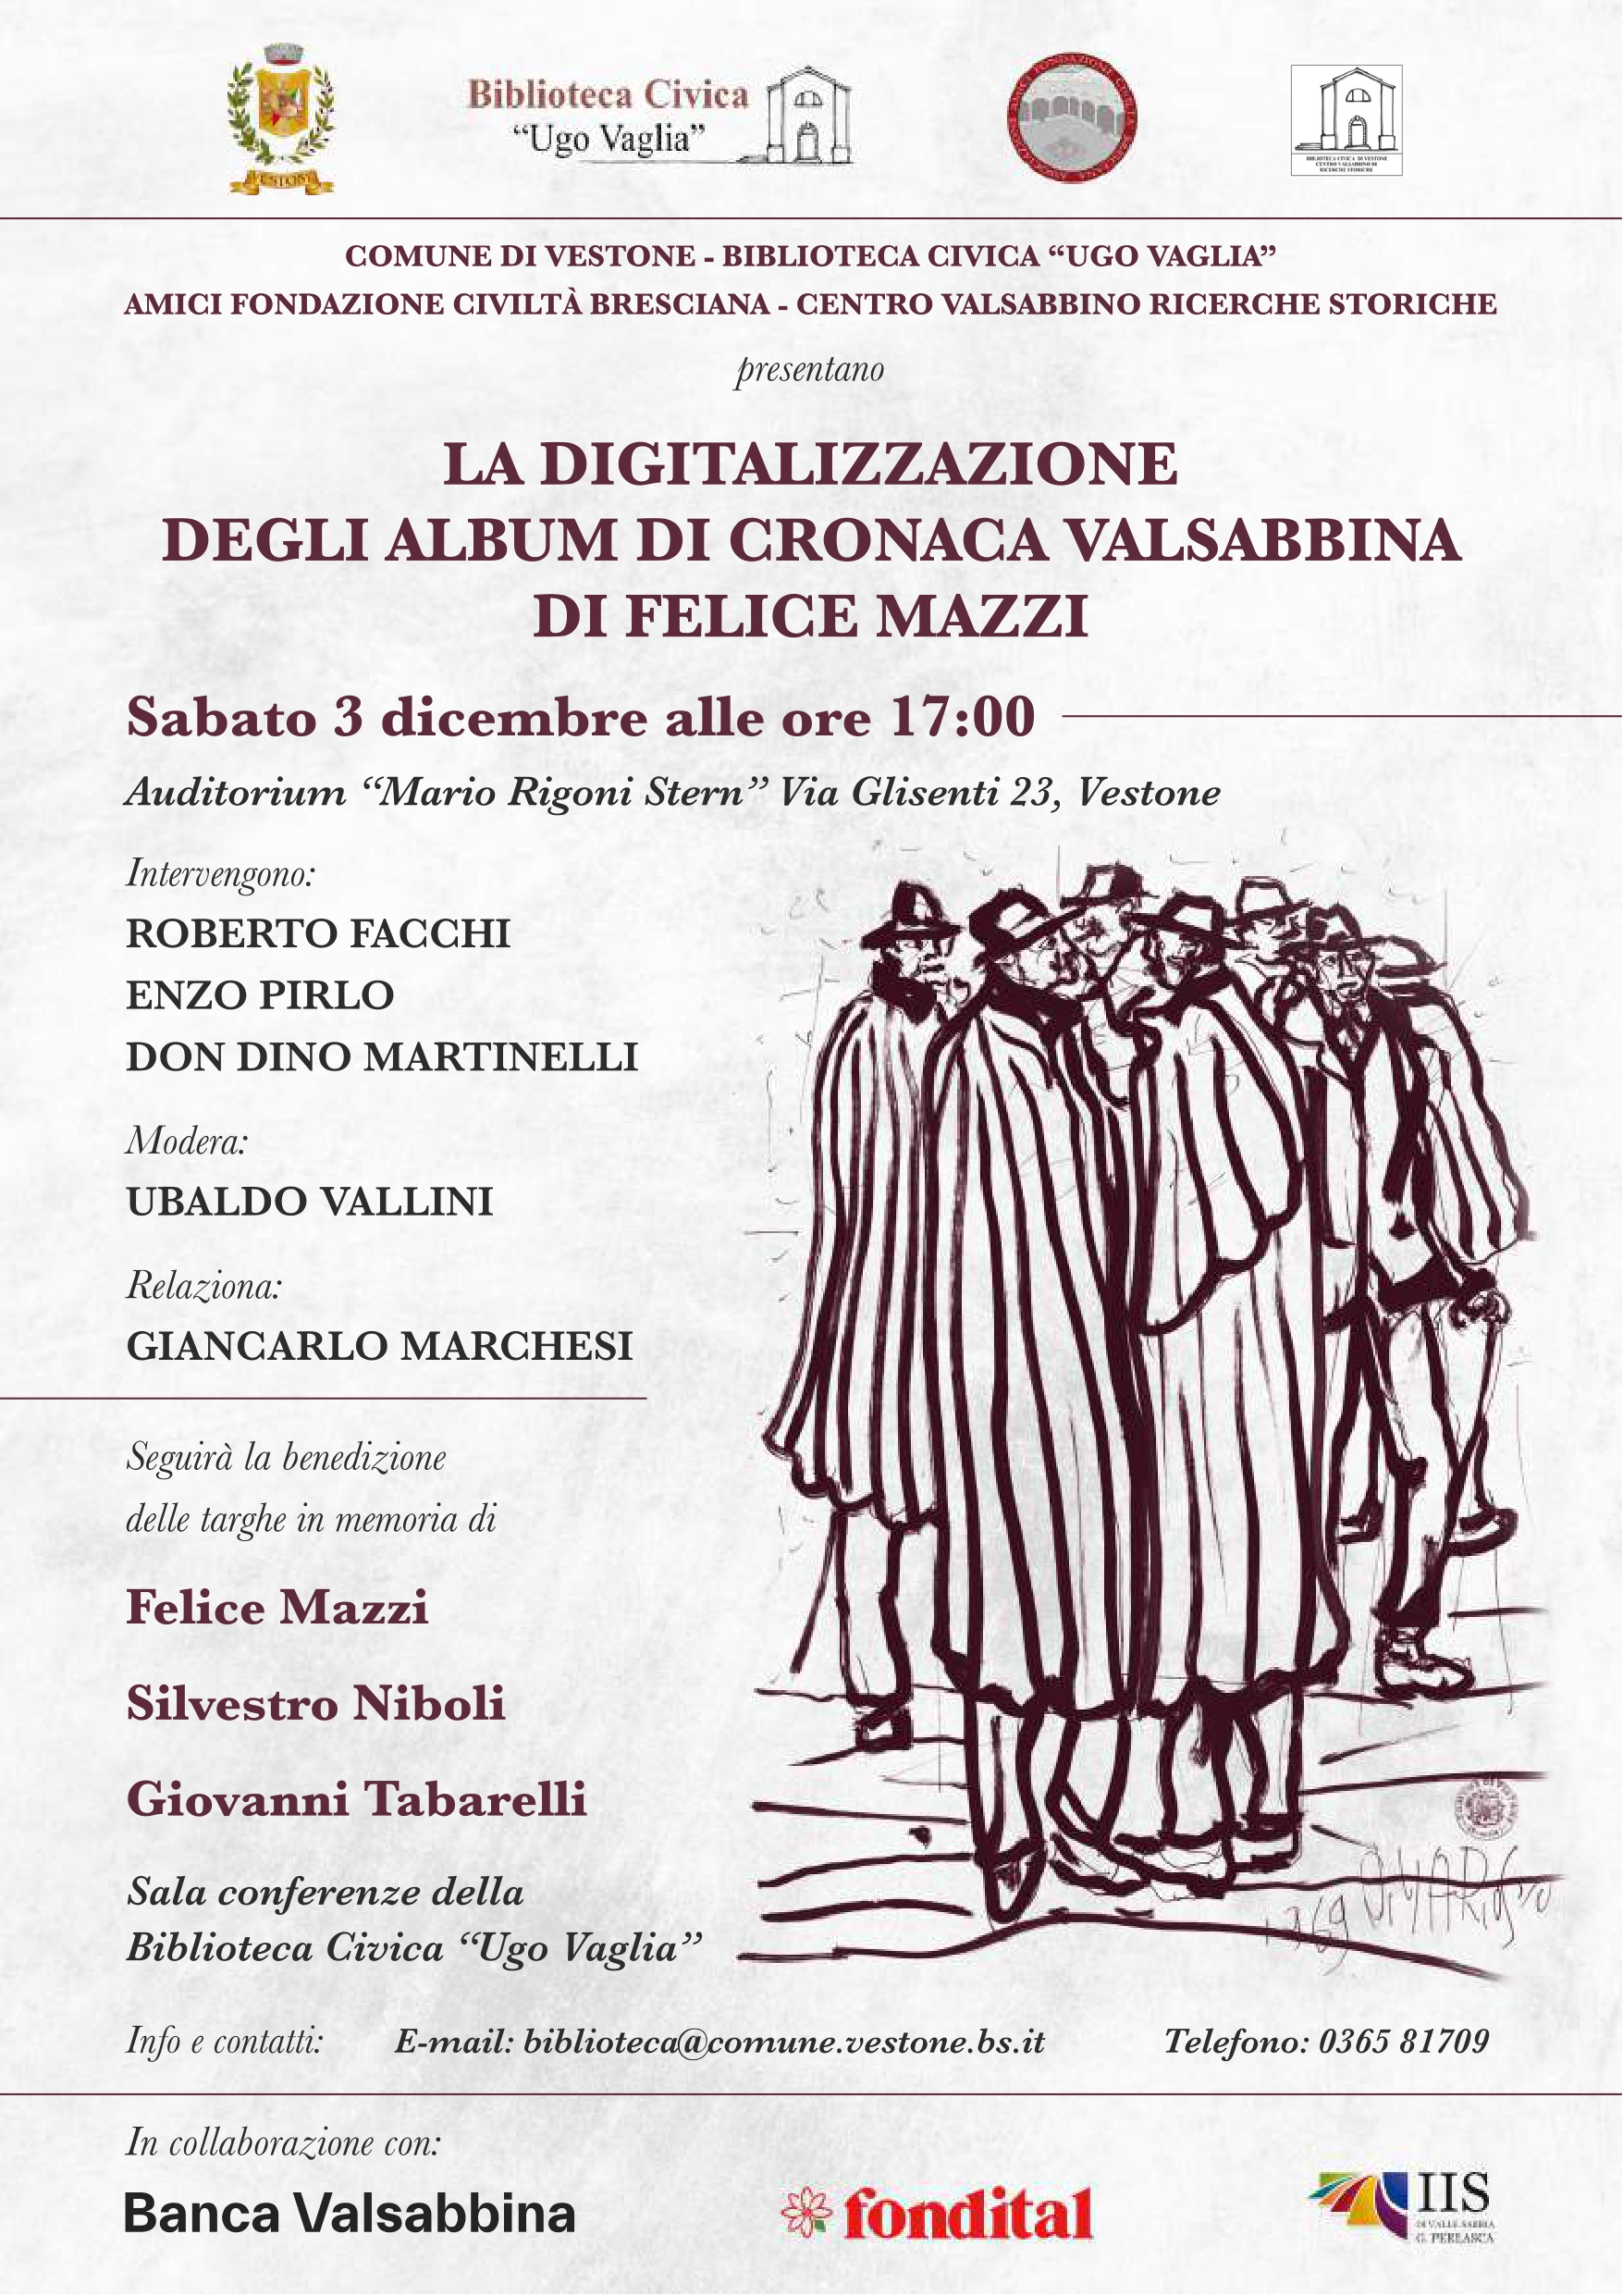 Immagine di copertina per la digitalizzazione degli Album di Cronaca Valsabbina di Felice Mazzi